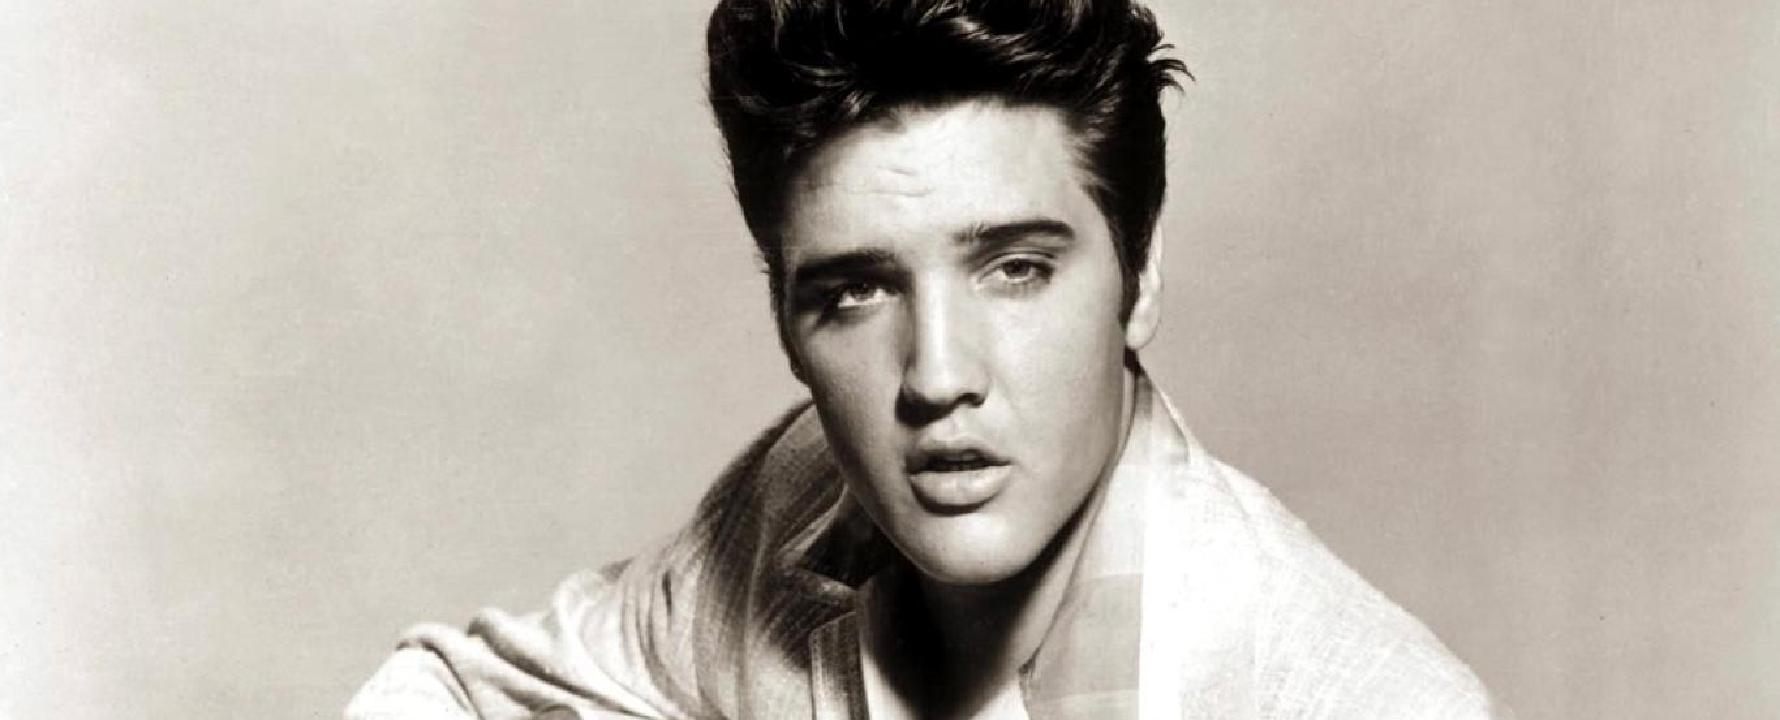 Photographie promotionnelle de Elvis Presley.